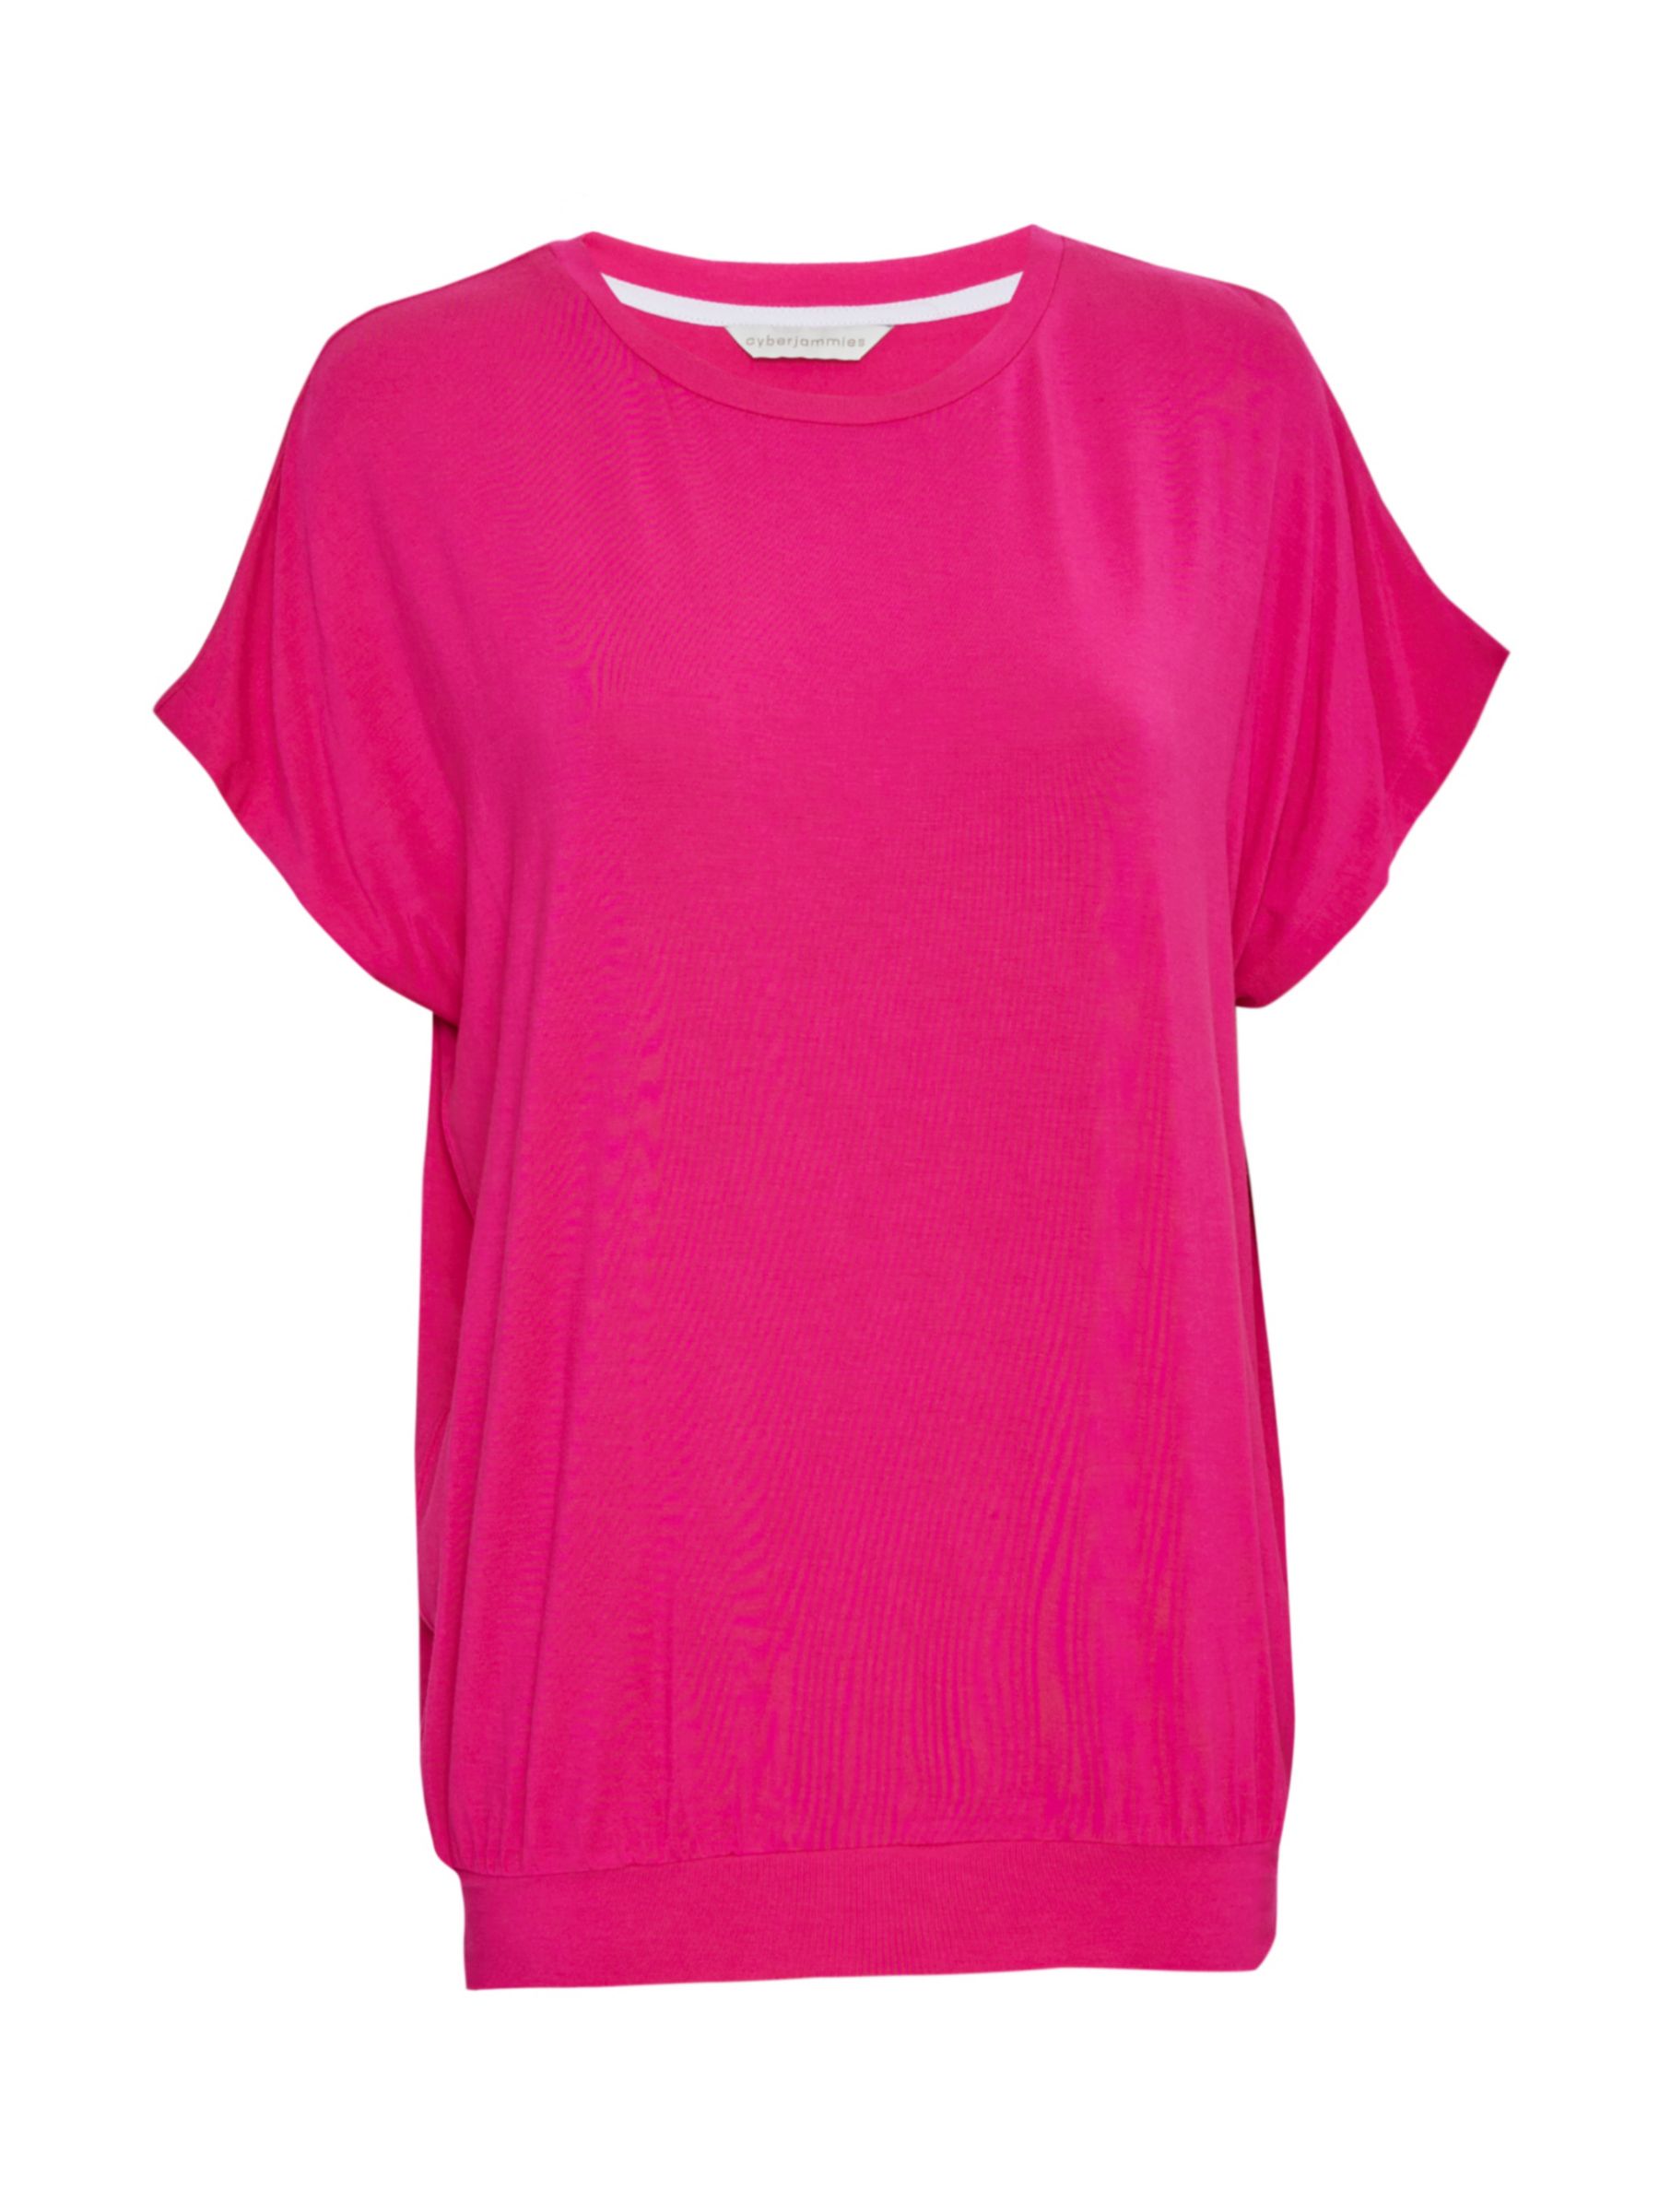 Buy Cyberjammies Hailey Slouch Pyjama Top, Pink Online at johnlewis.com